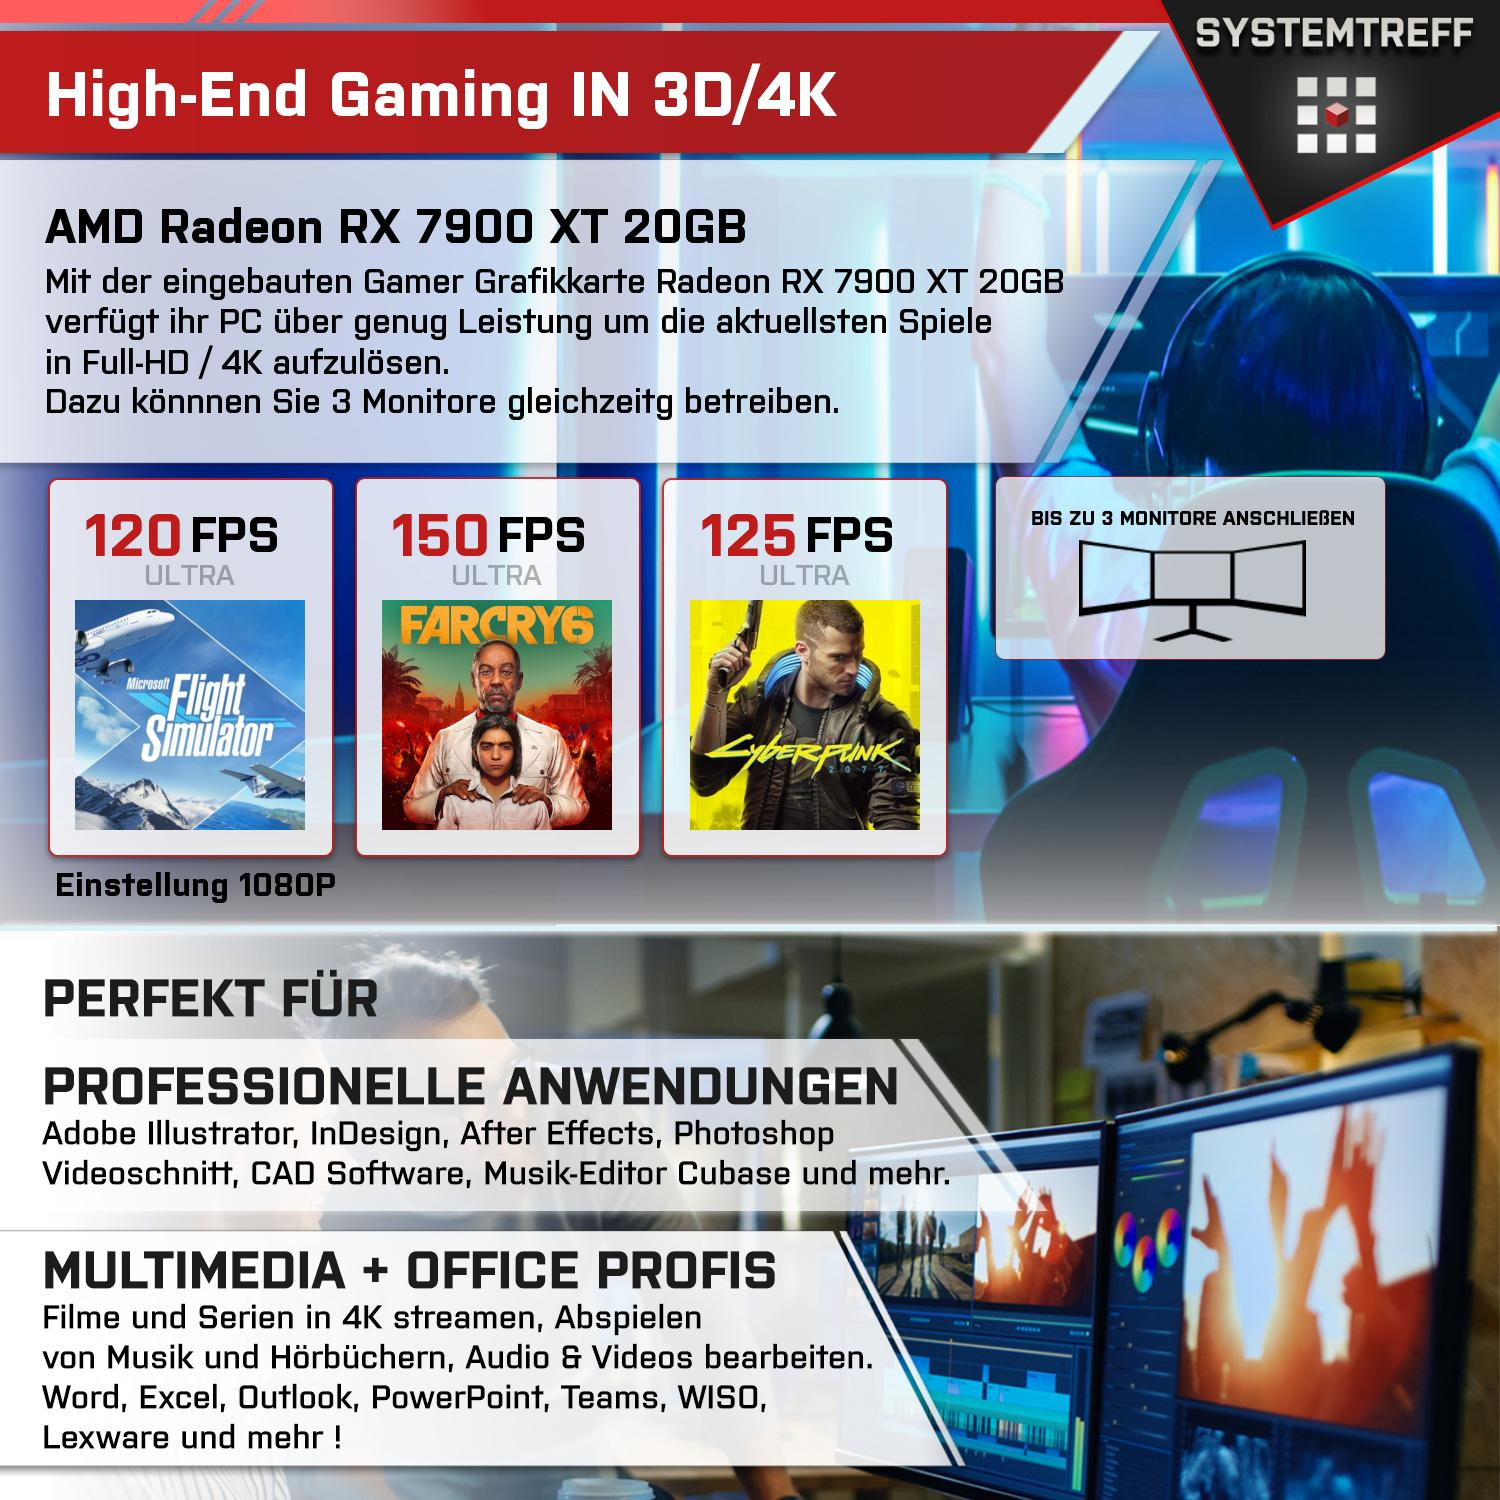 SYSTEMTREFF Gaming Komplett AMD PC Komplett GB AMD 20GB 7950X3D 1000 mSSD, GB 9 20 XT 7900 GDDR6, RAM, 32 Ryzen 7950X3D, RX Radeon GB mit Prozessor